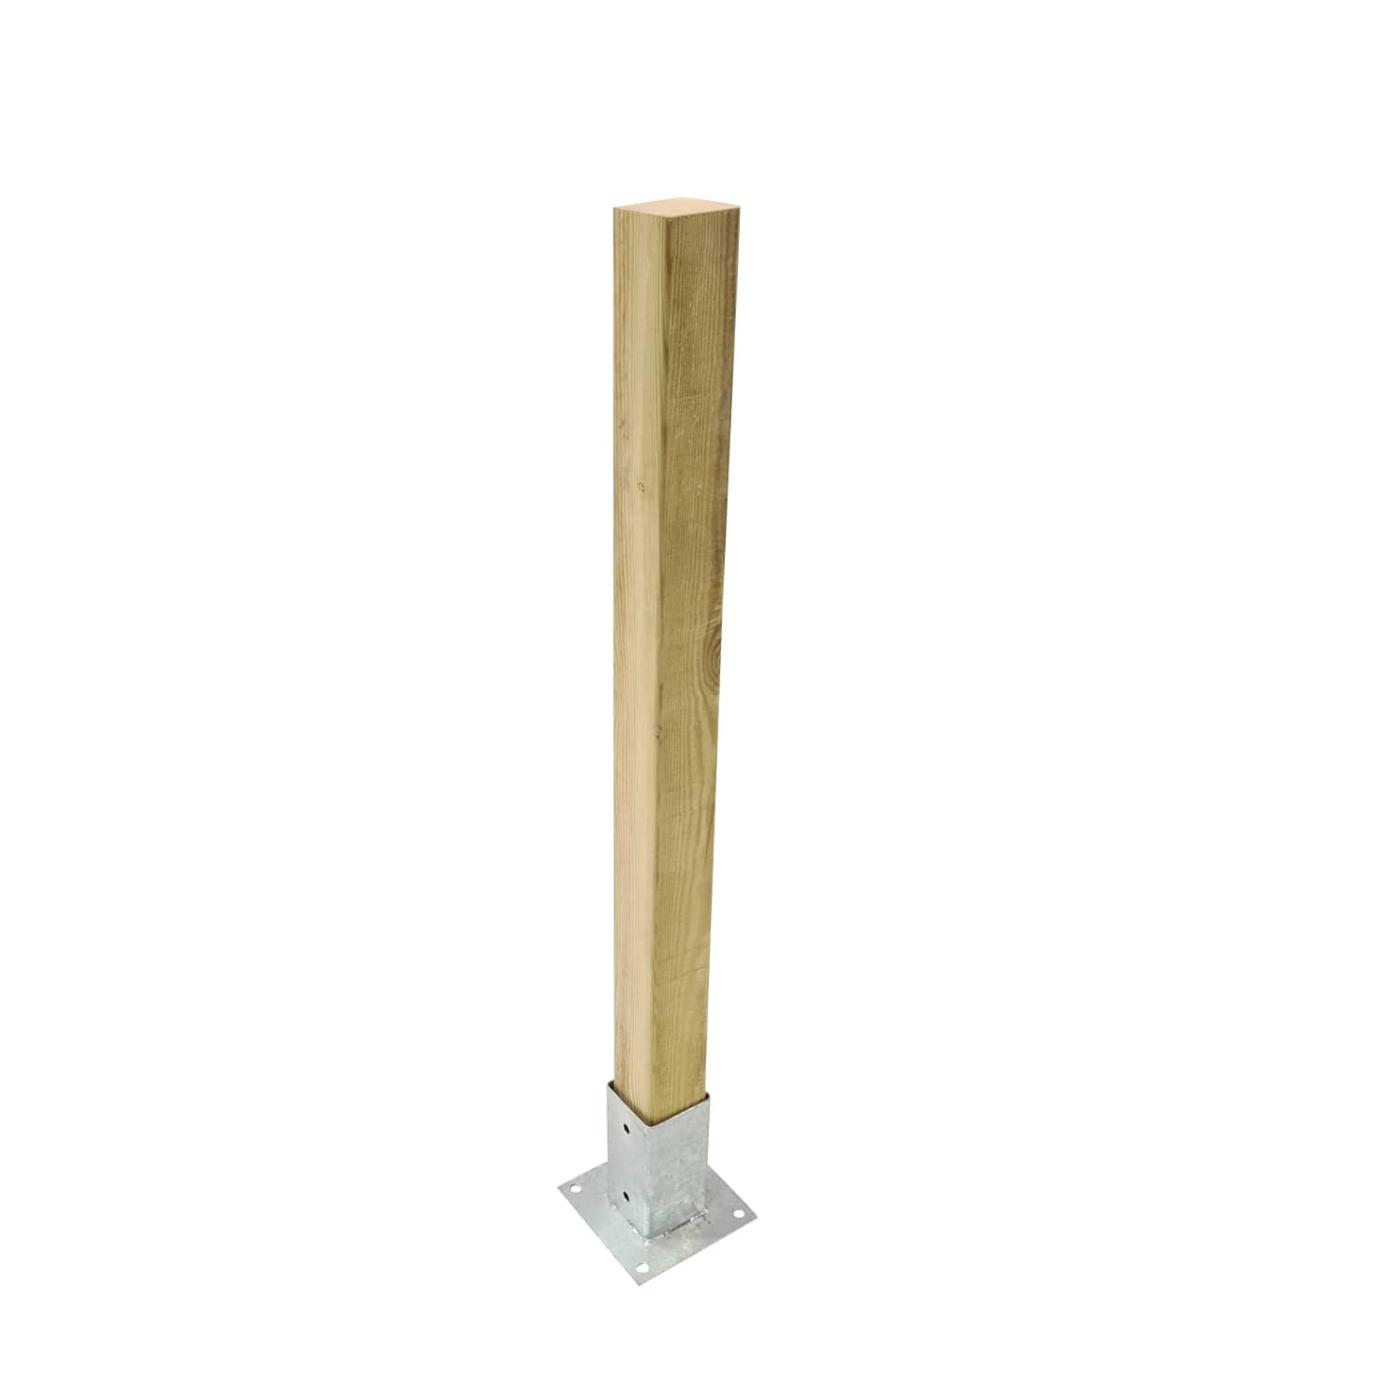 Pilar de madera de 68x68mm para vallas de exterior homologadas MASGAMES. 